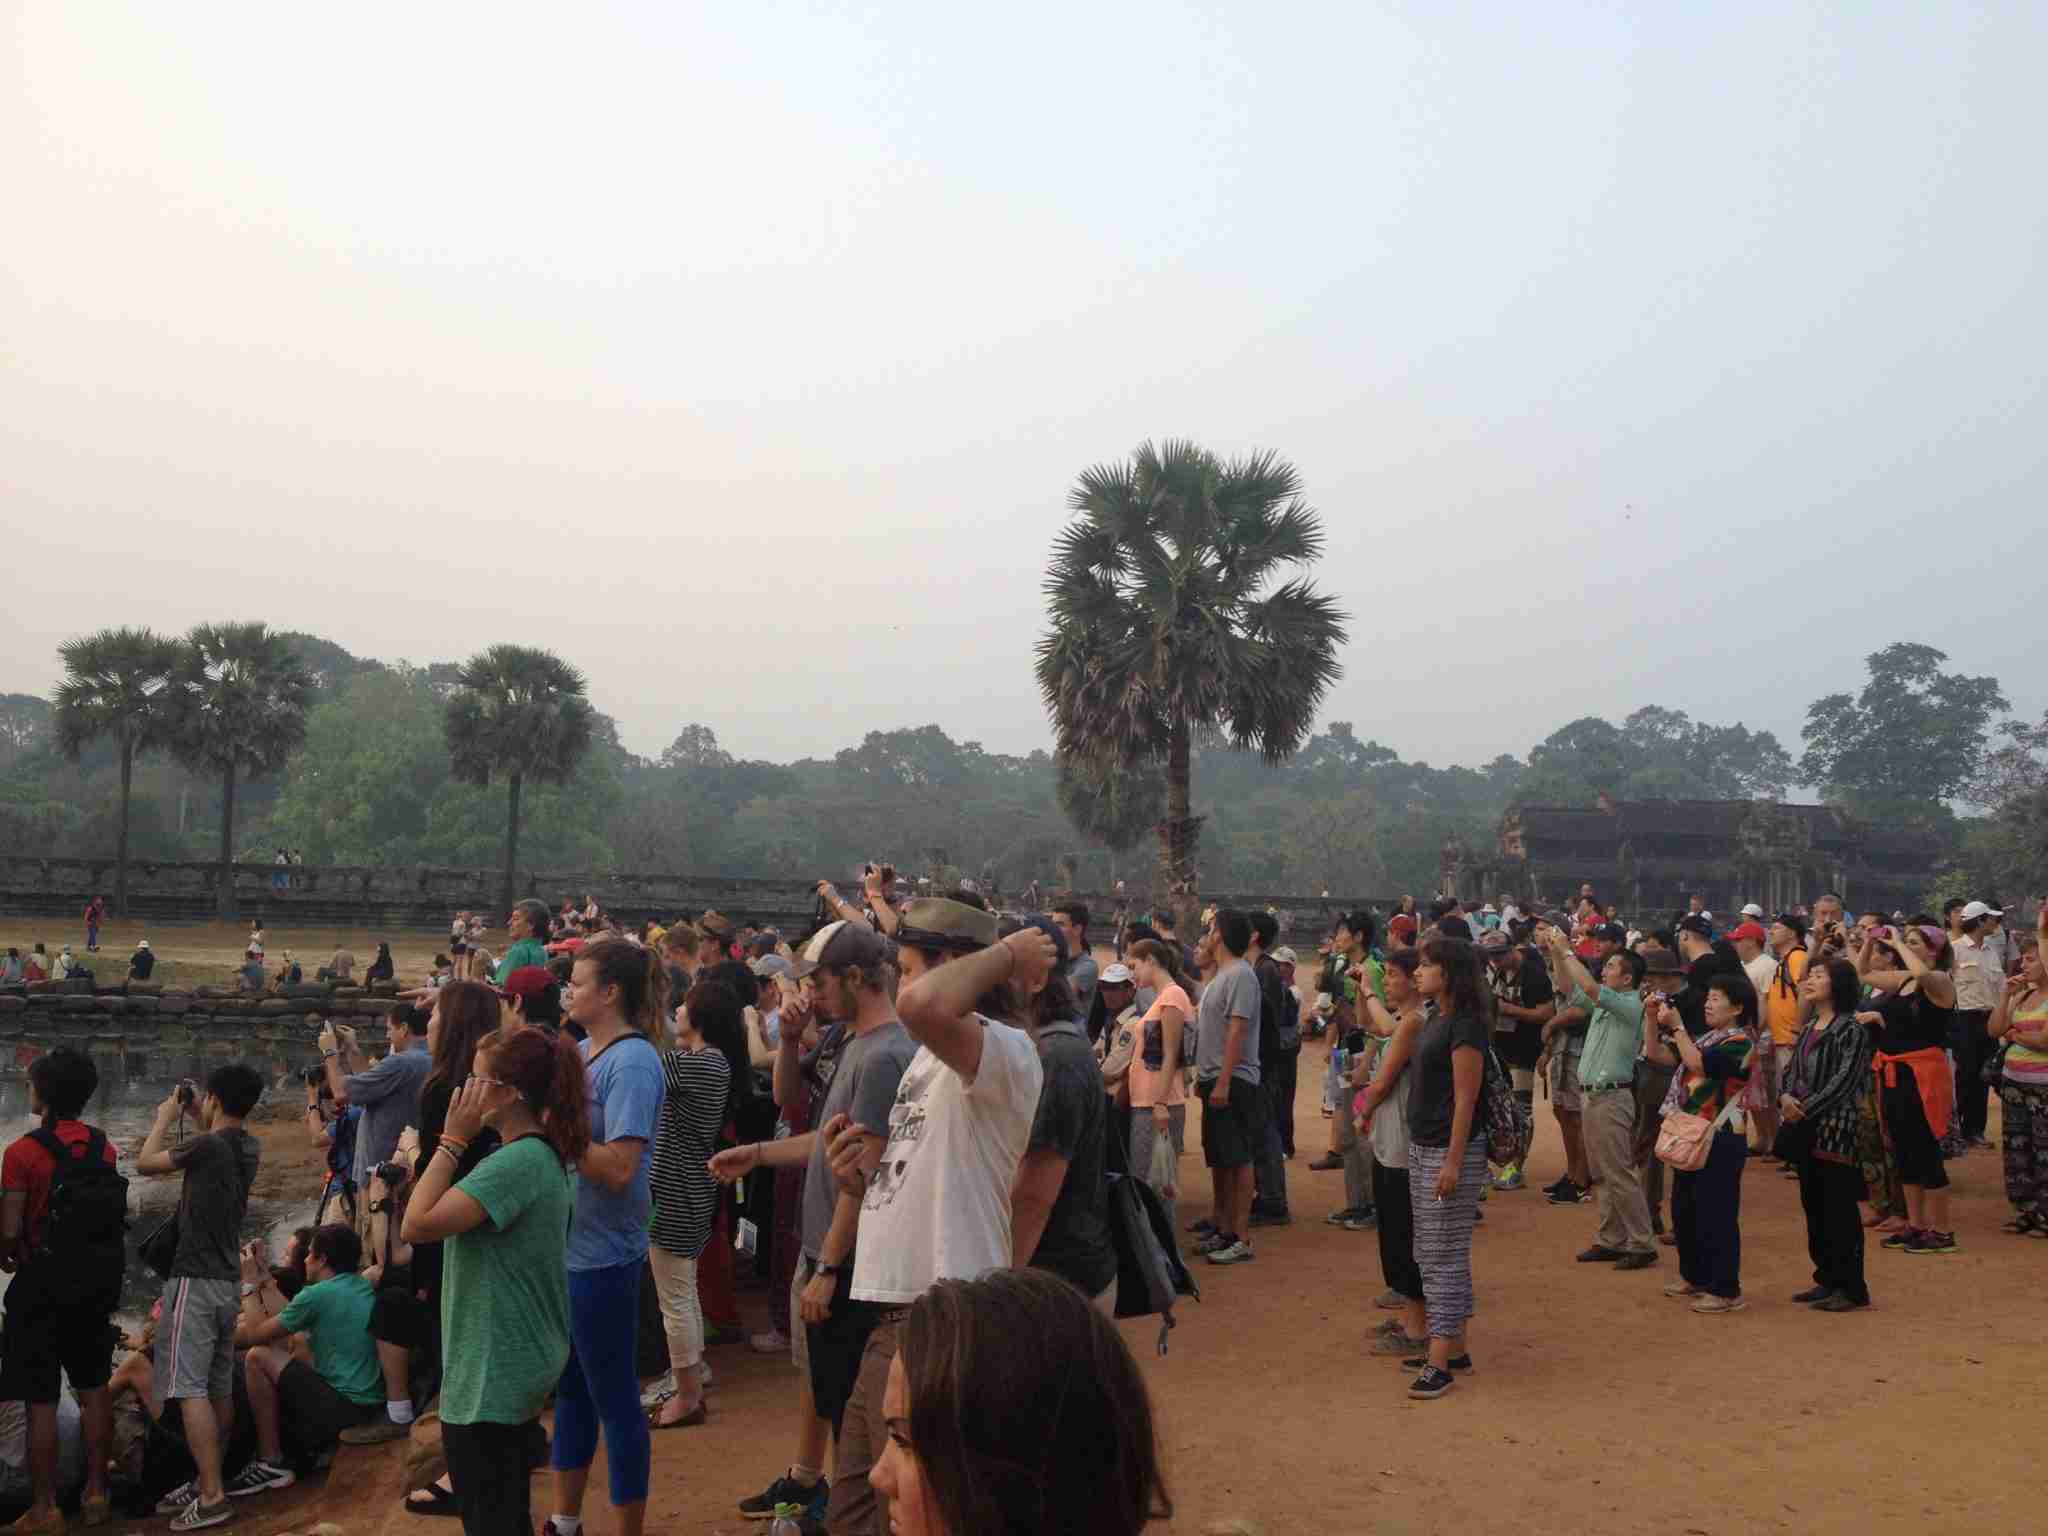 Spectators at Angkor Wat